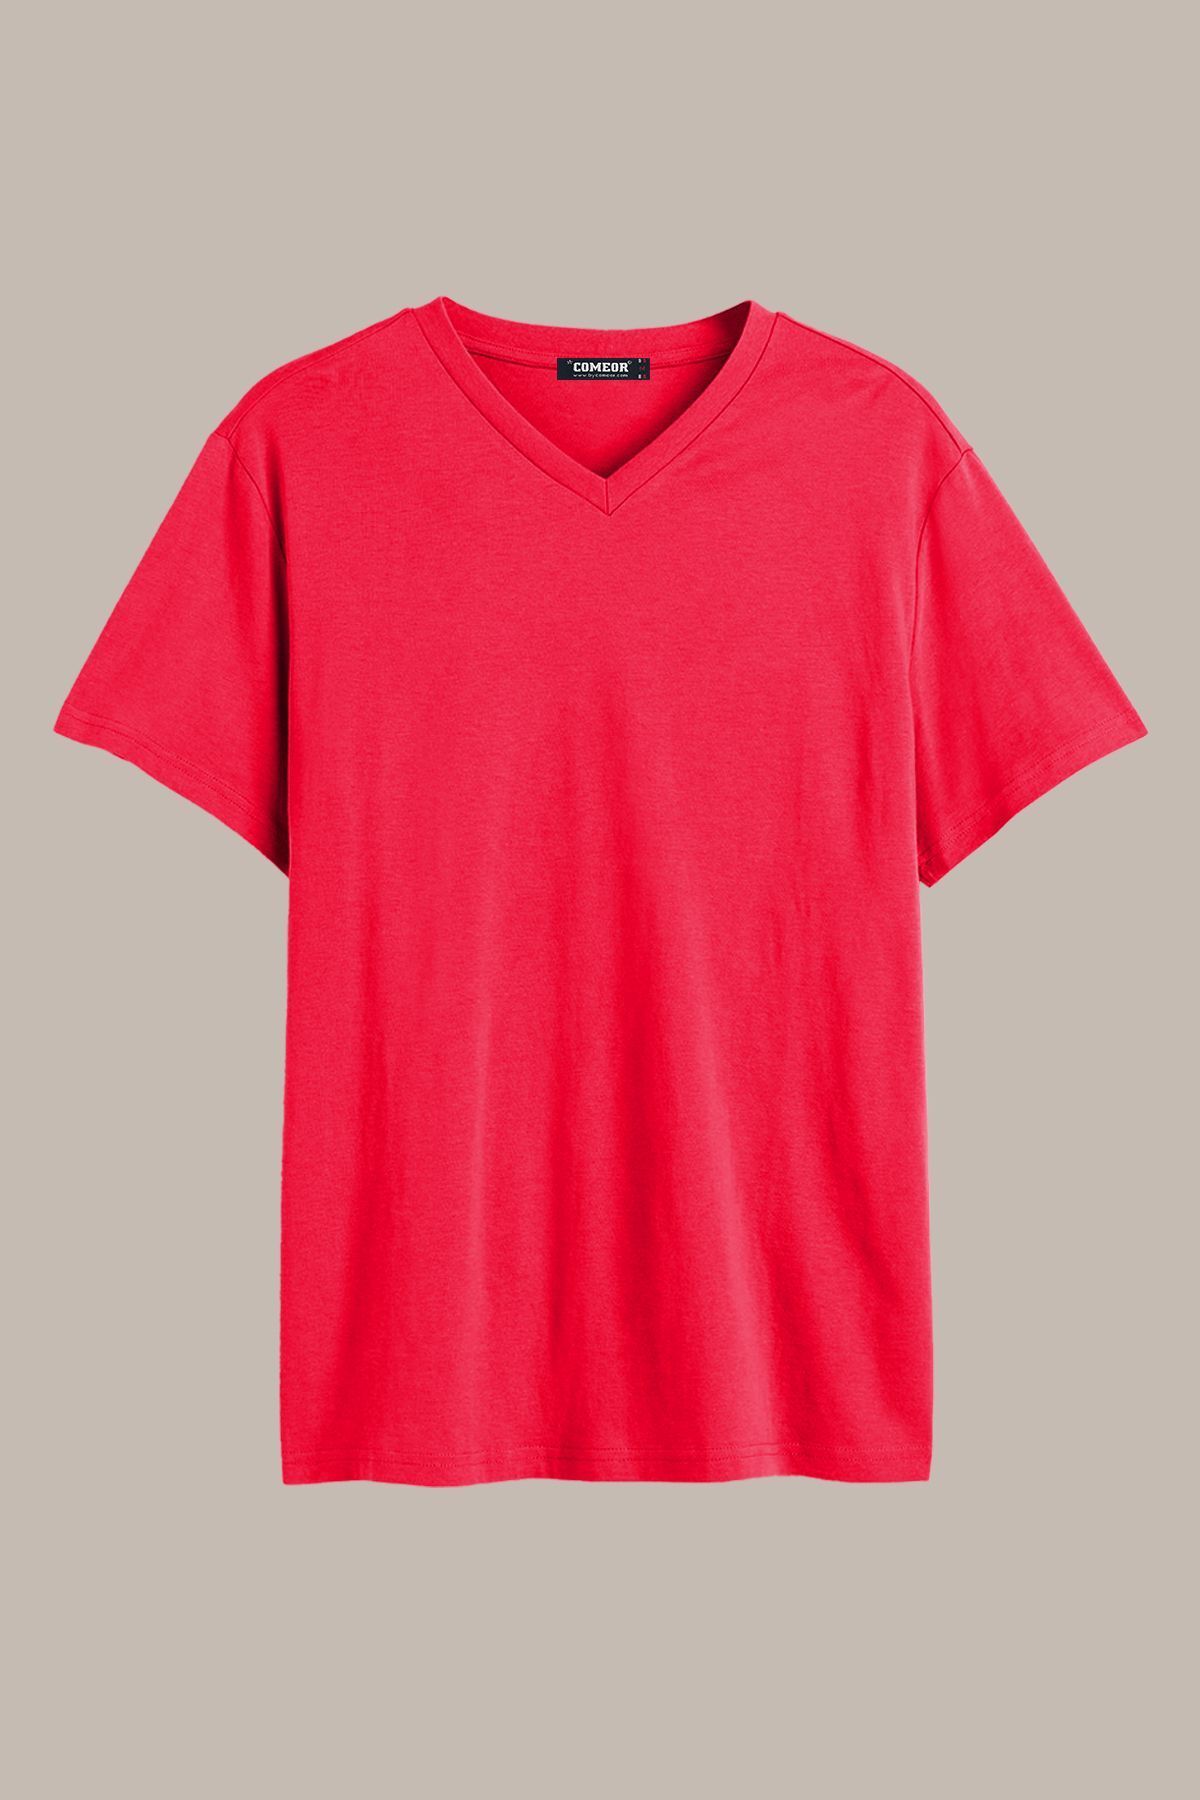 COMEOR Erkek Kırmızı Basıc Regular Fit Pamuklu Kısa Kollu V Yaka T-shirt